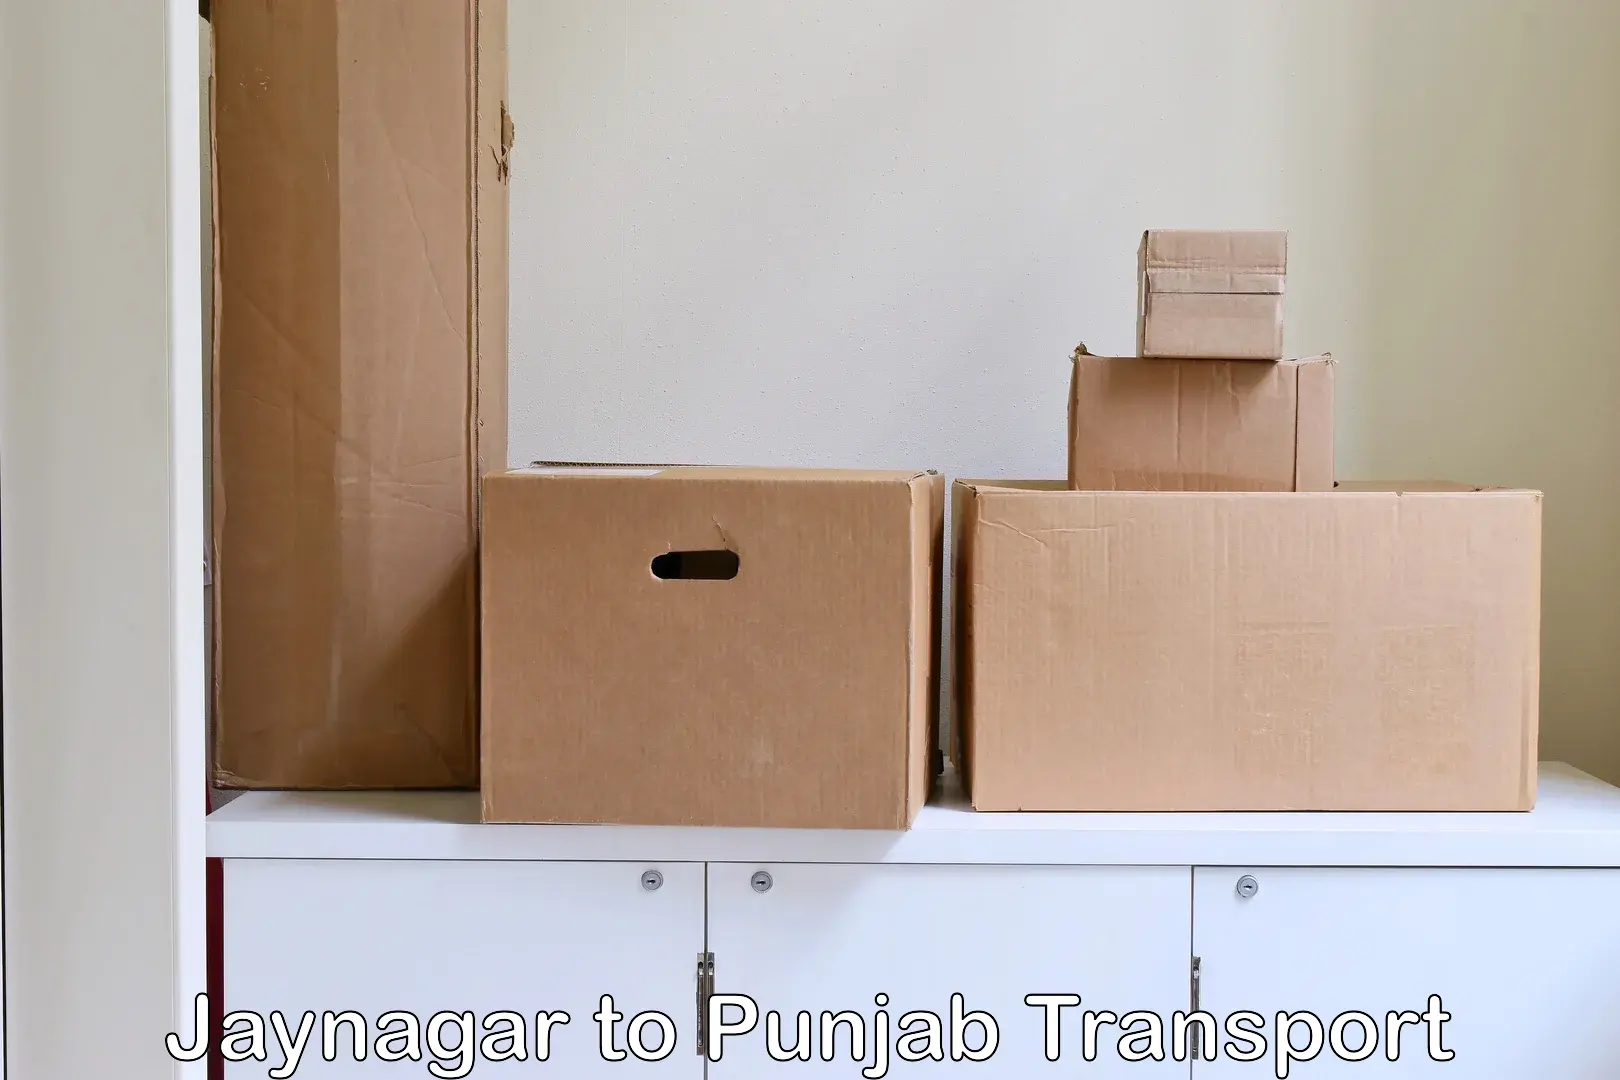 Shipping partner Jaynagar to Amritsar